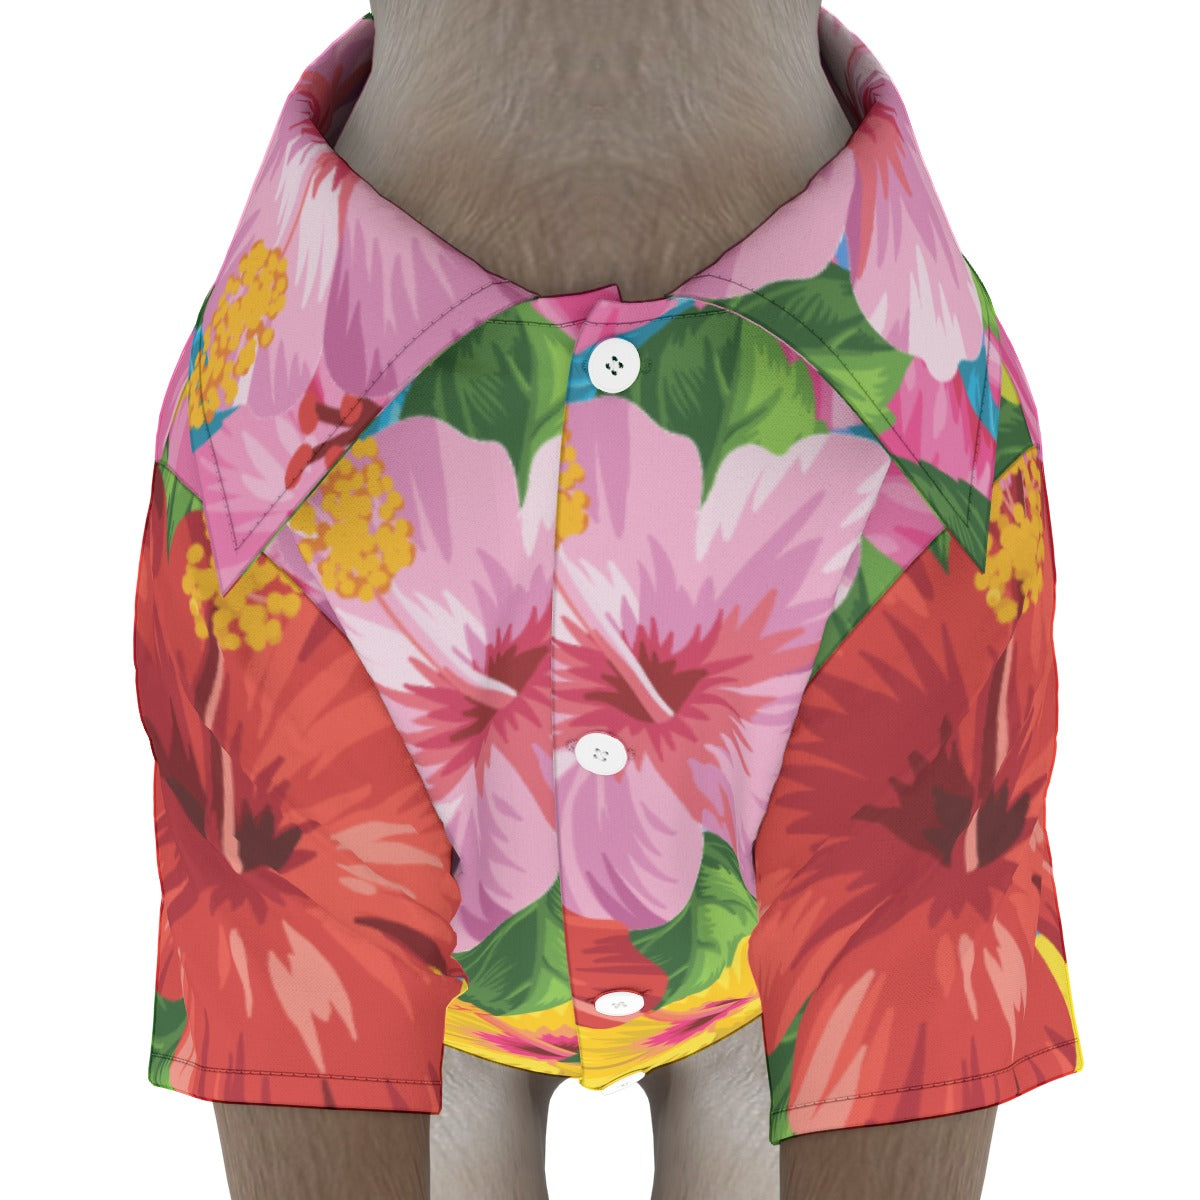 Flower Power Pet‘s Hawaiian Shirt